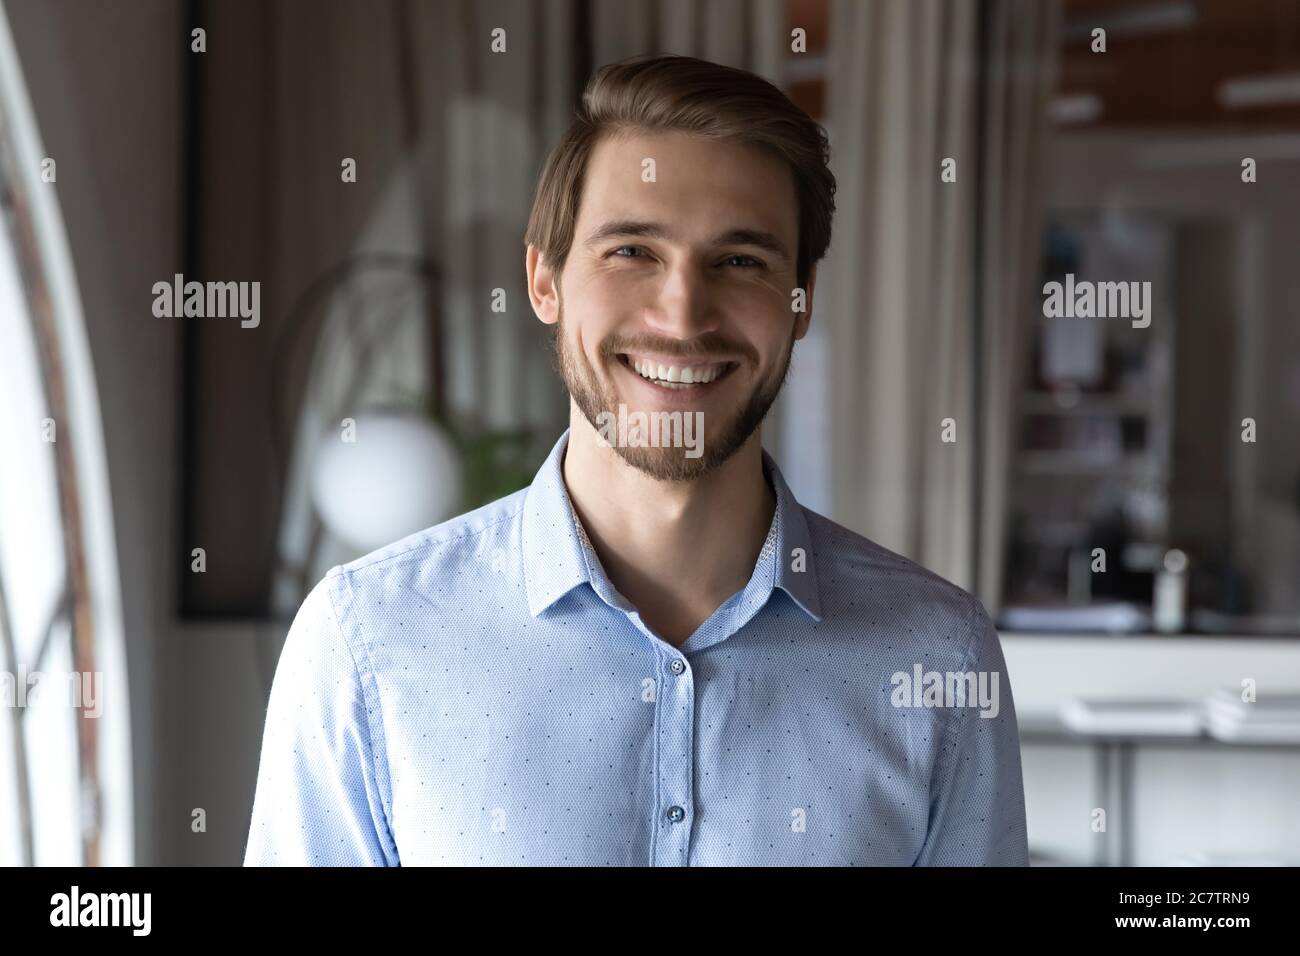 Profilbild eines lächelnden männlichen Mitarbeiters, der am Arbeitsplatz posiert Stockfoto